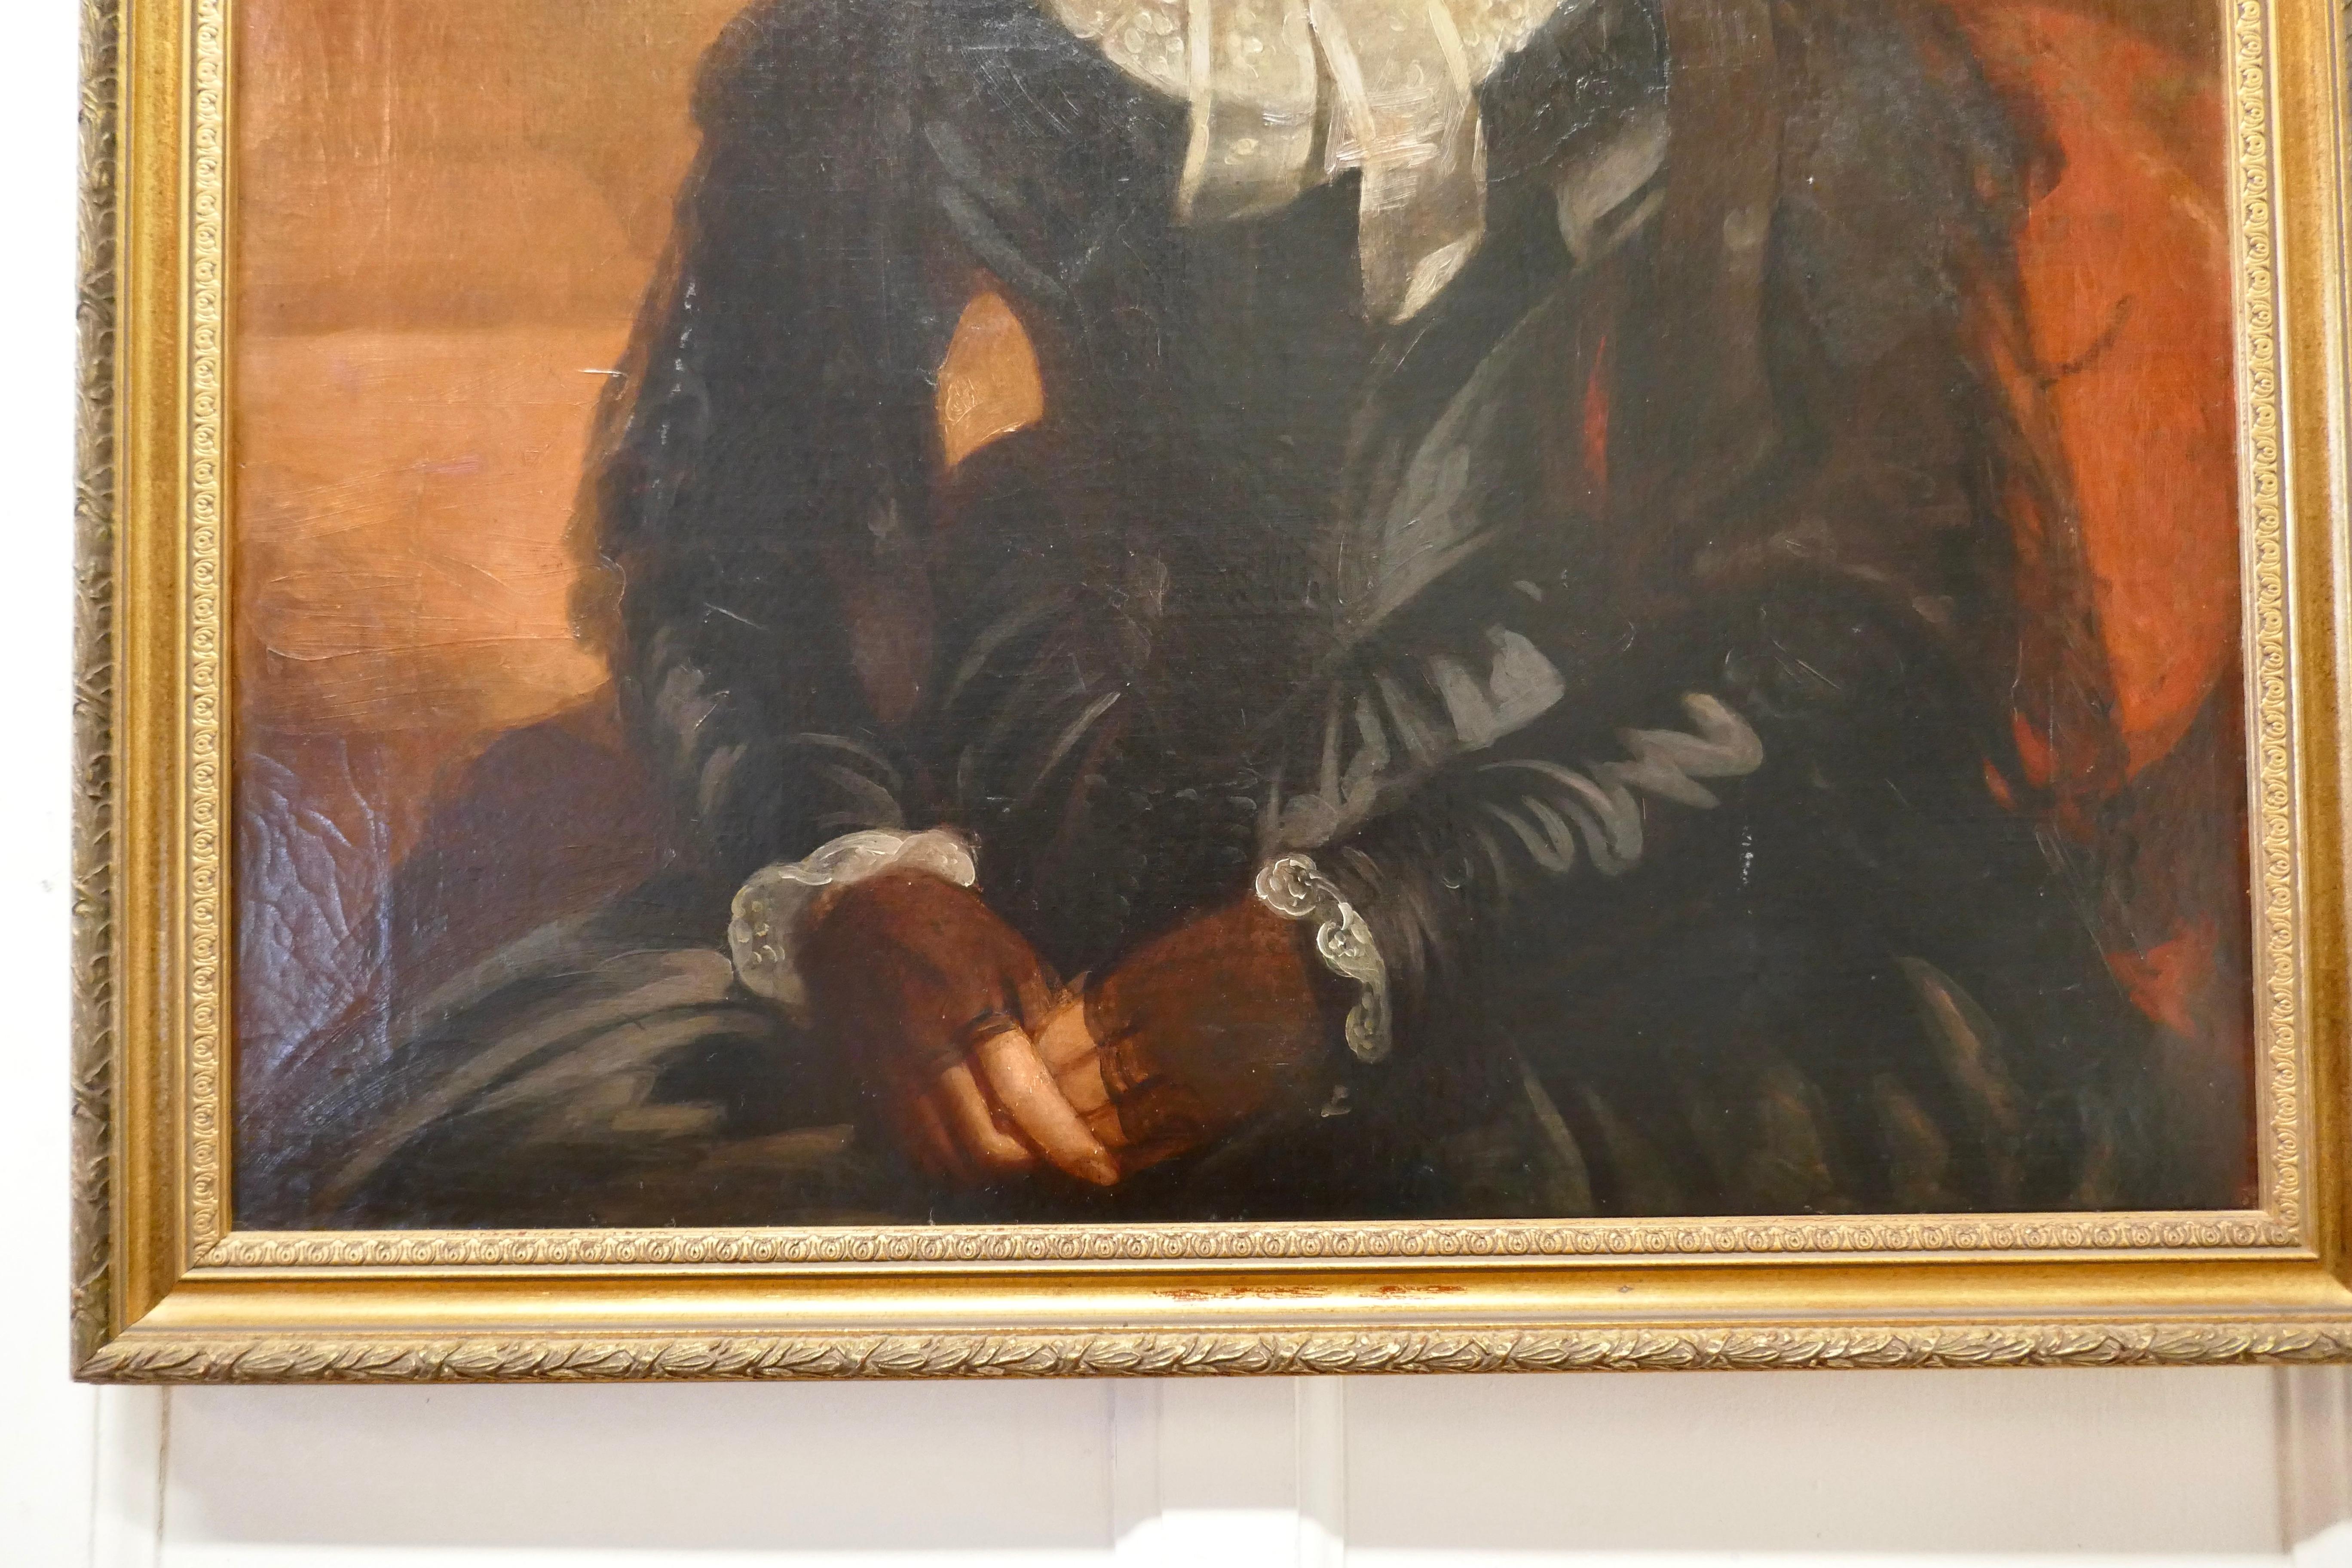 huile sur toile du 19ème siècle - Portrait d'une femme

Délicieuse représentation d'une dame aimable, elle est assise et porte une robe en soie noire, un col et un bonnet en dentelle plissée blanche. D'après le costume, on peut dater la pièce